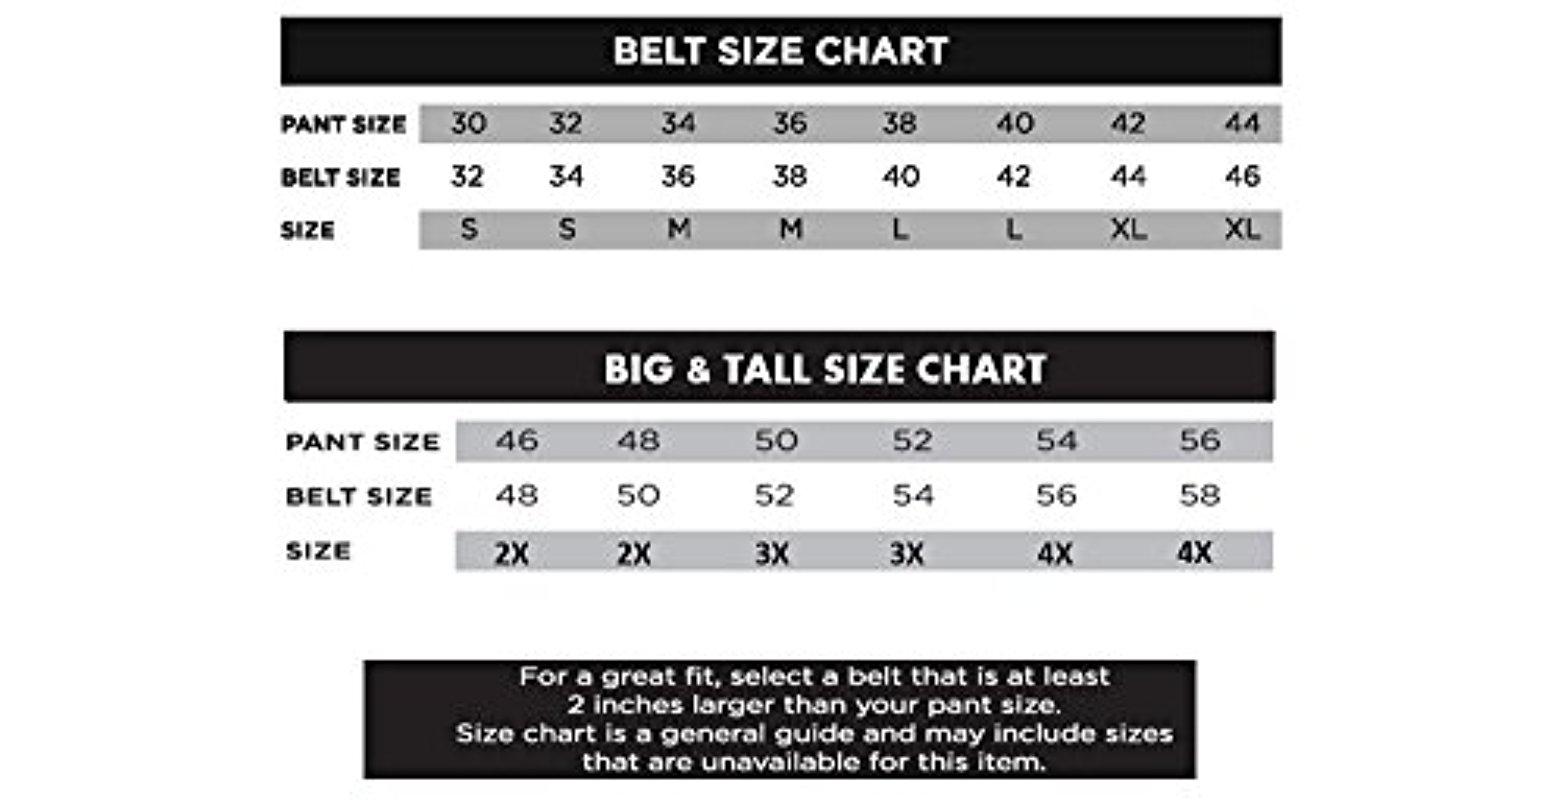 Boys Belt Size Chart